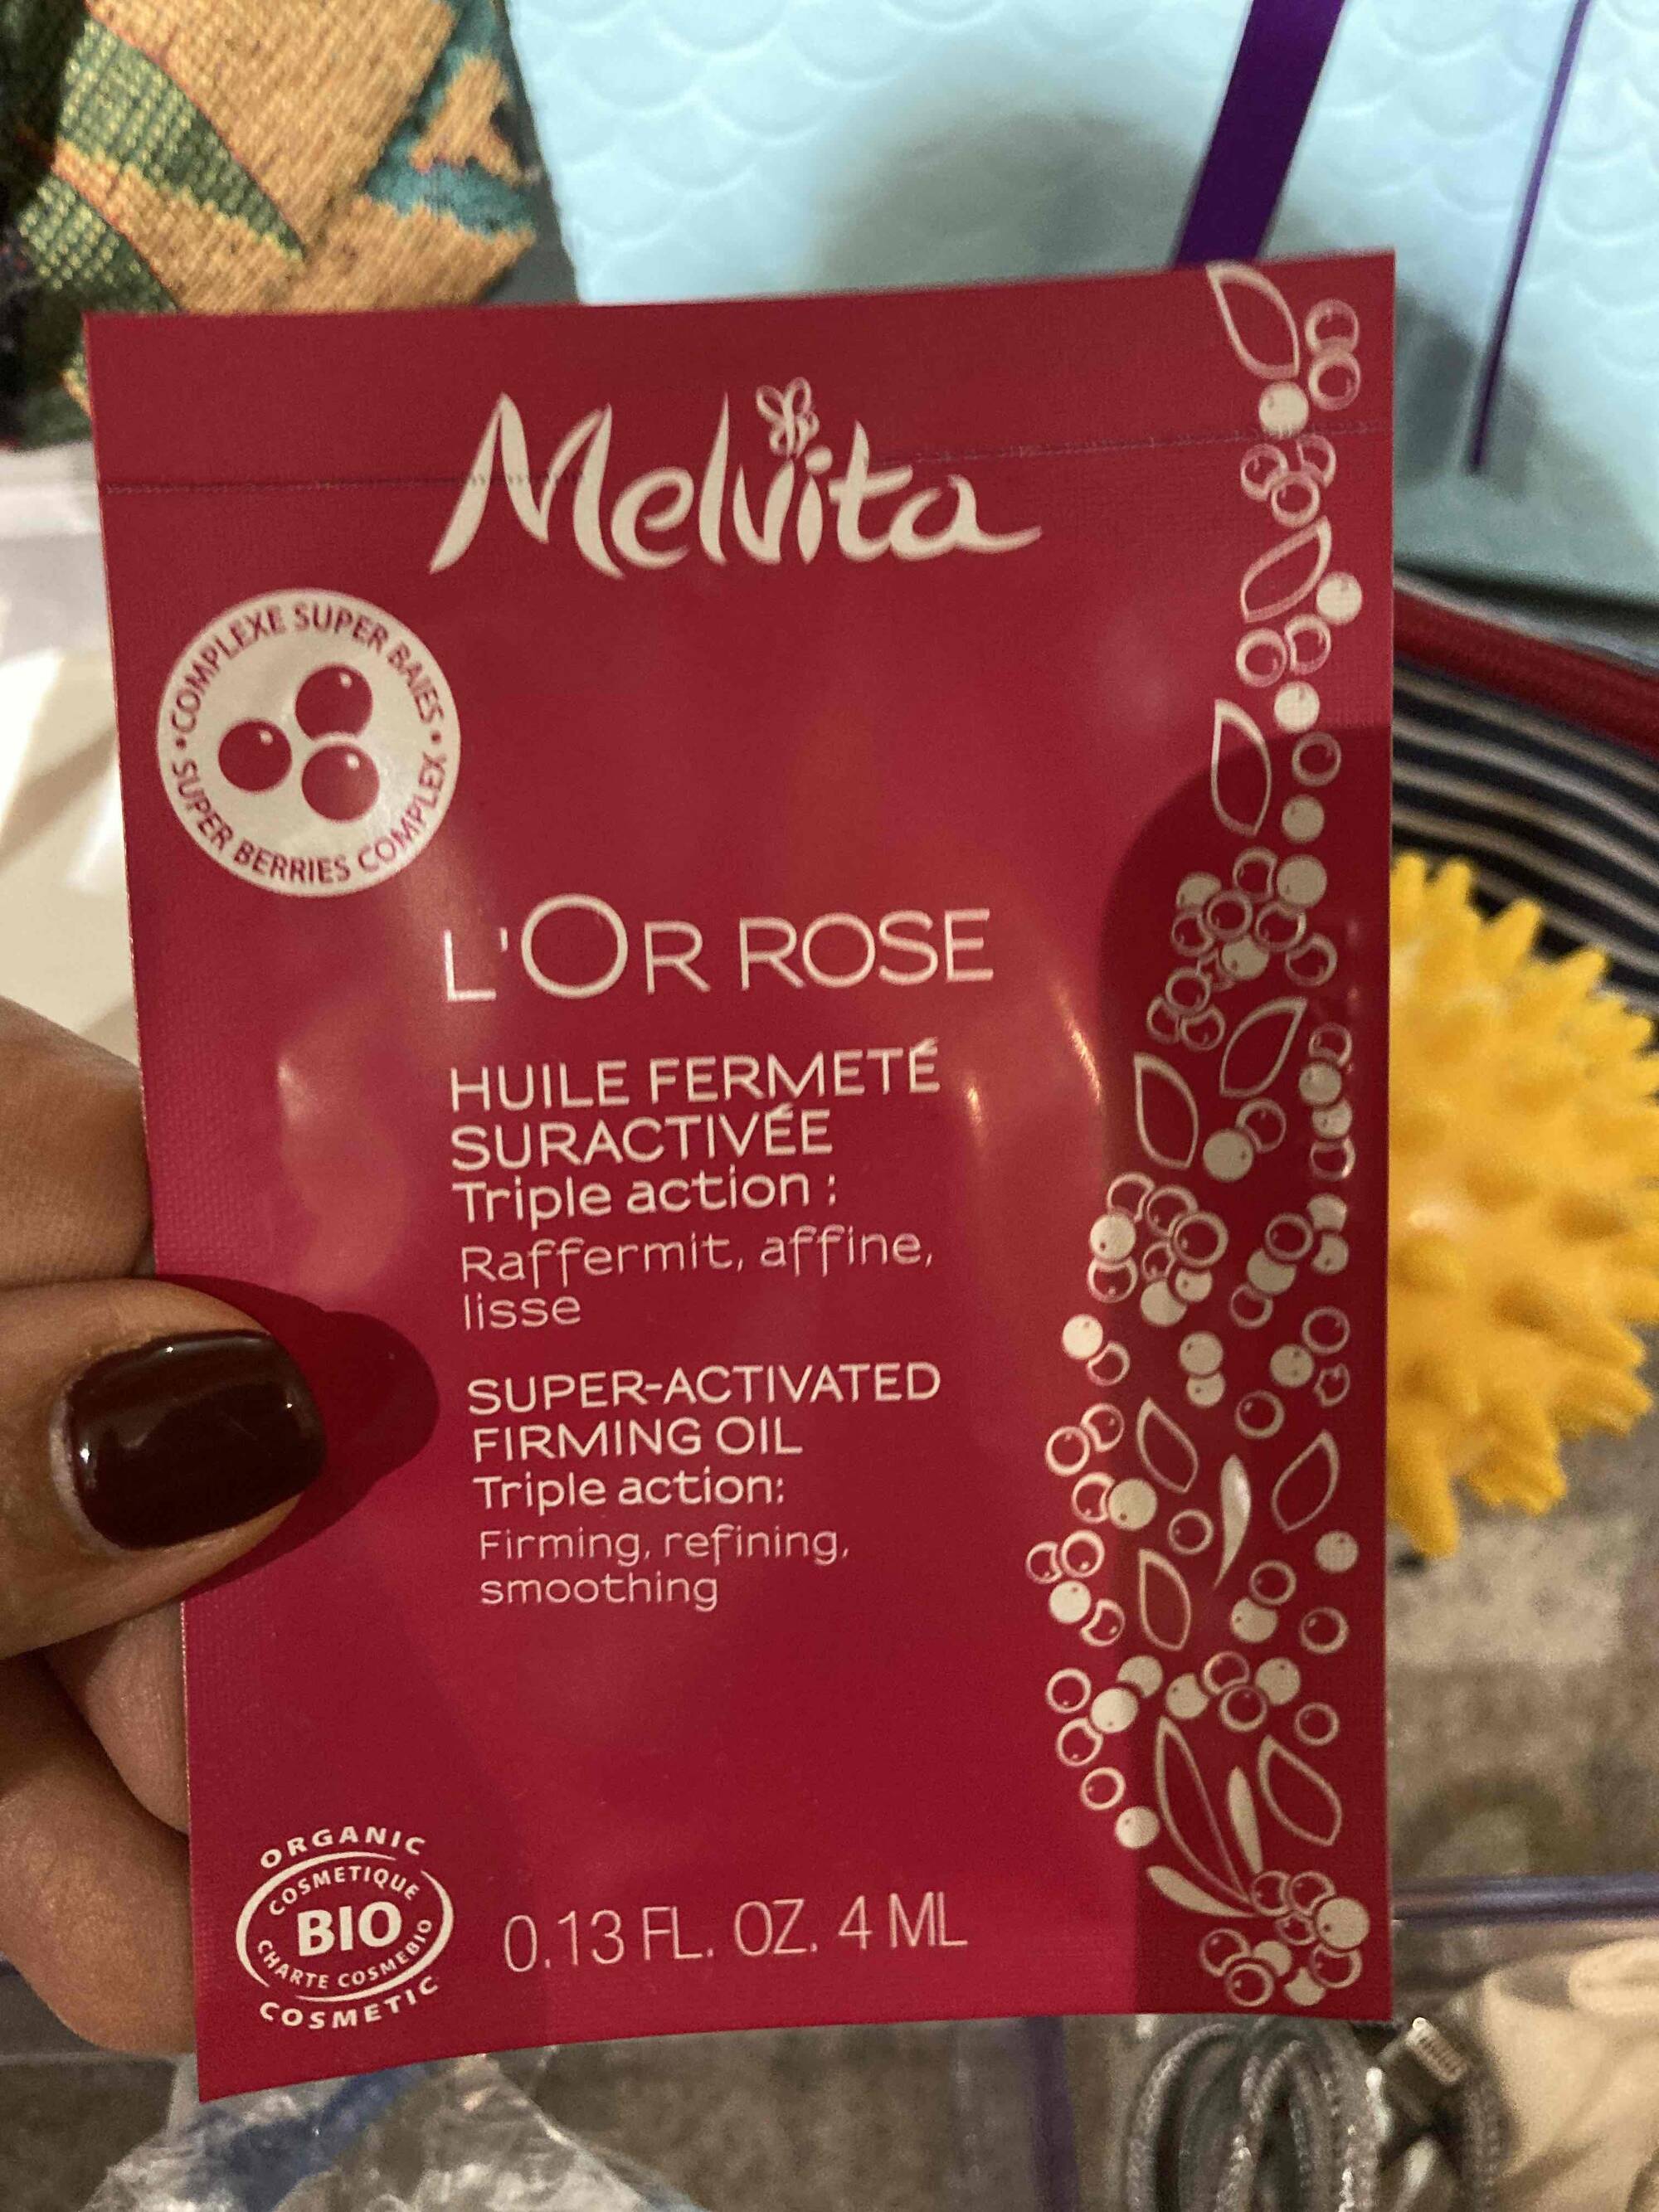 MELVITA - L’or rose - Huile fermeté suractivée